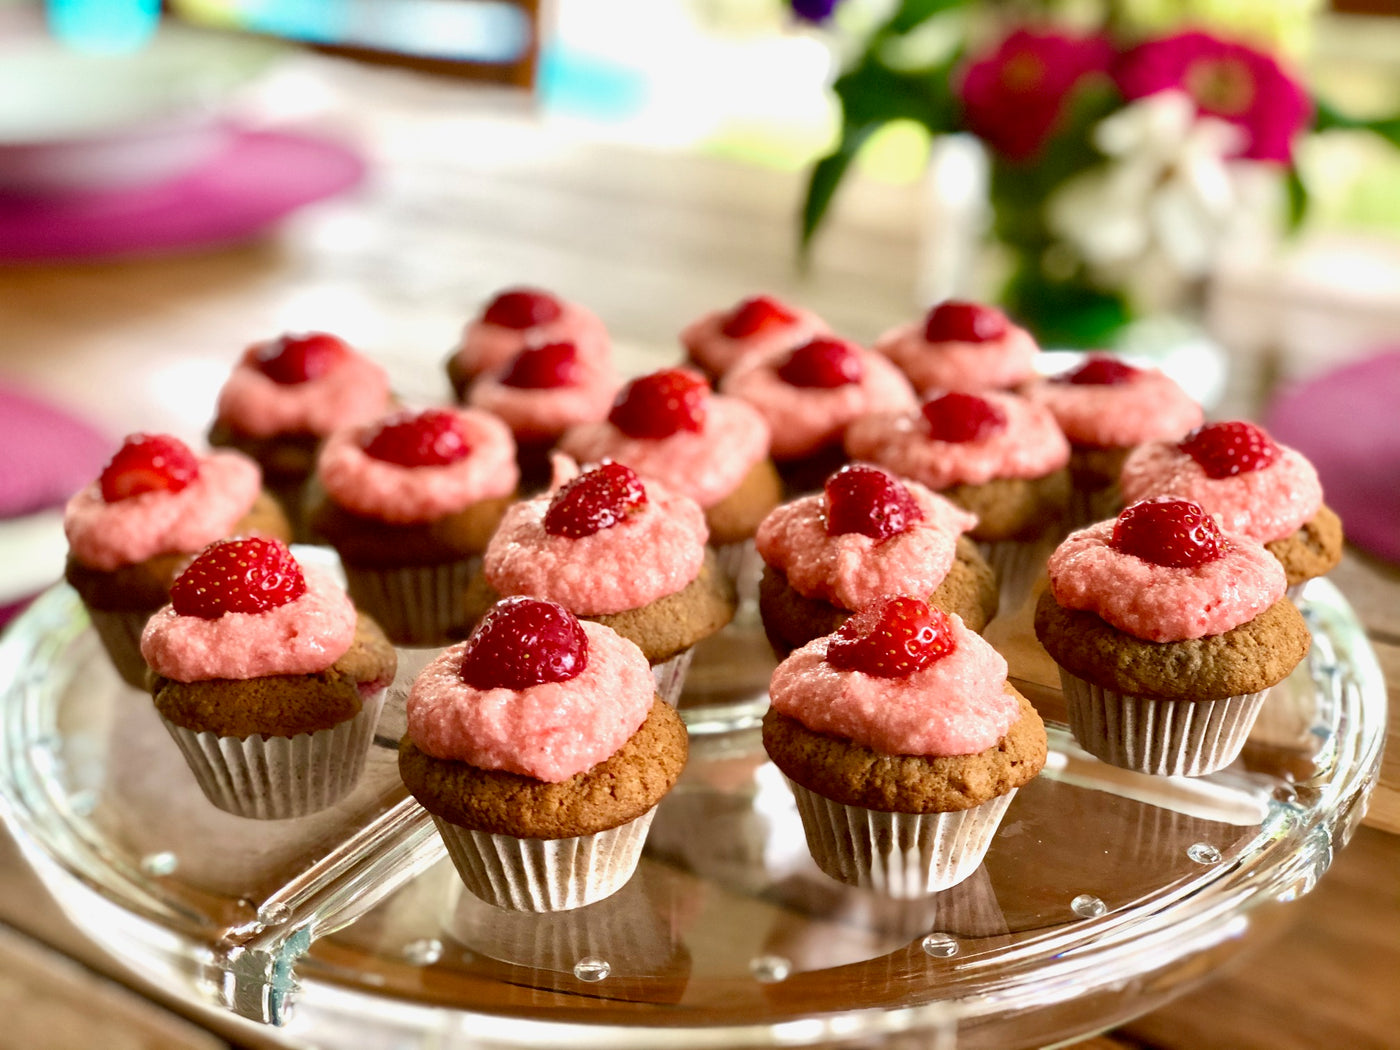 Les minis cupcakes aux fraises